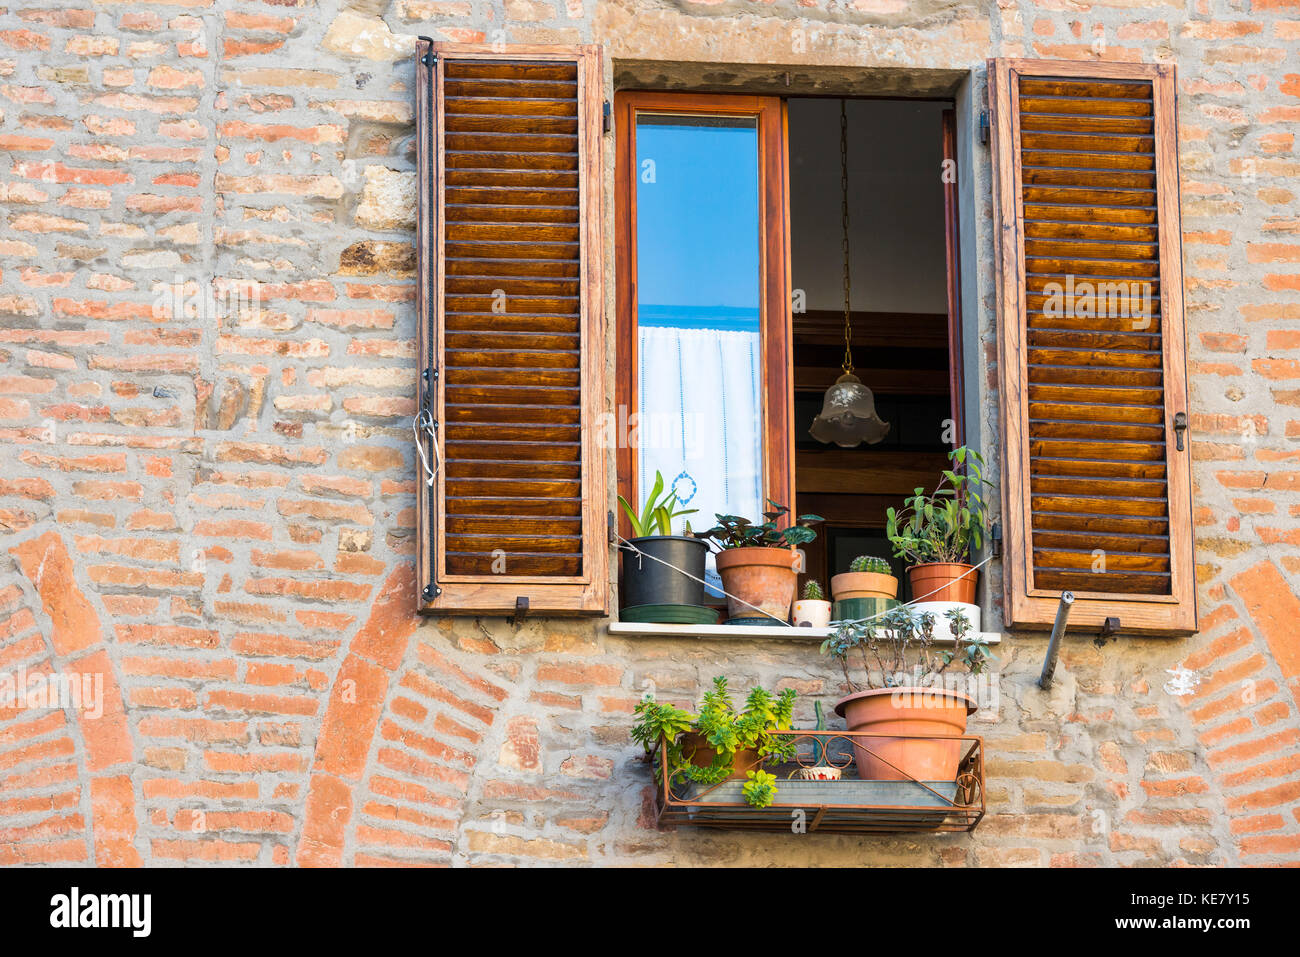 Fermer la vue d'une façade de maison en brique Montepulciano avec fenêtre ouverte, pots et stores grillagées, Toscane, Italie Banque D'Images